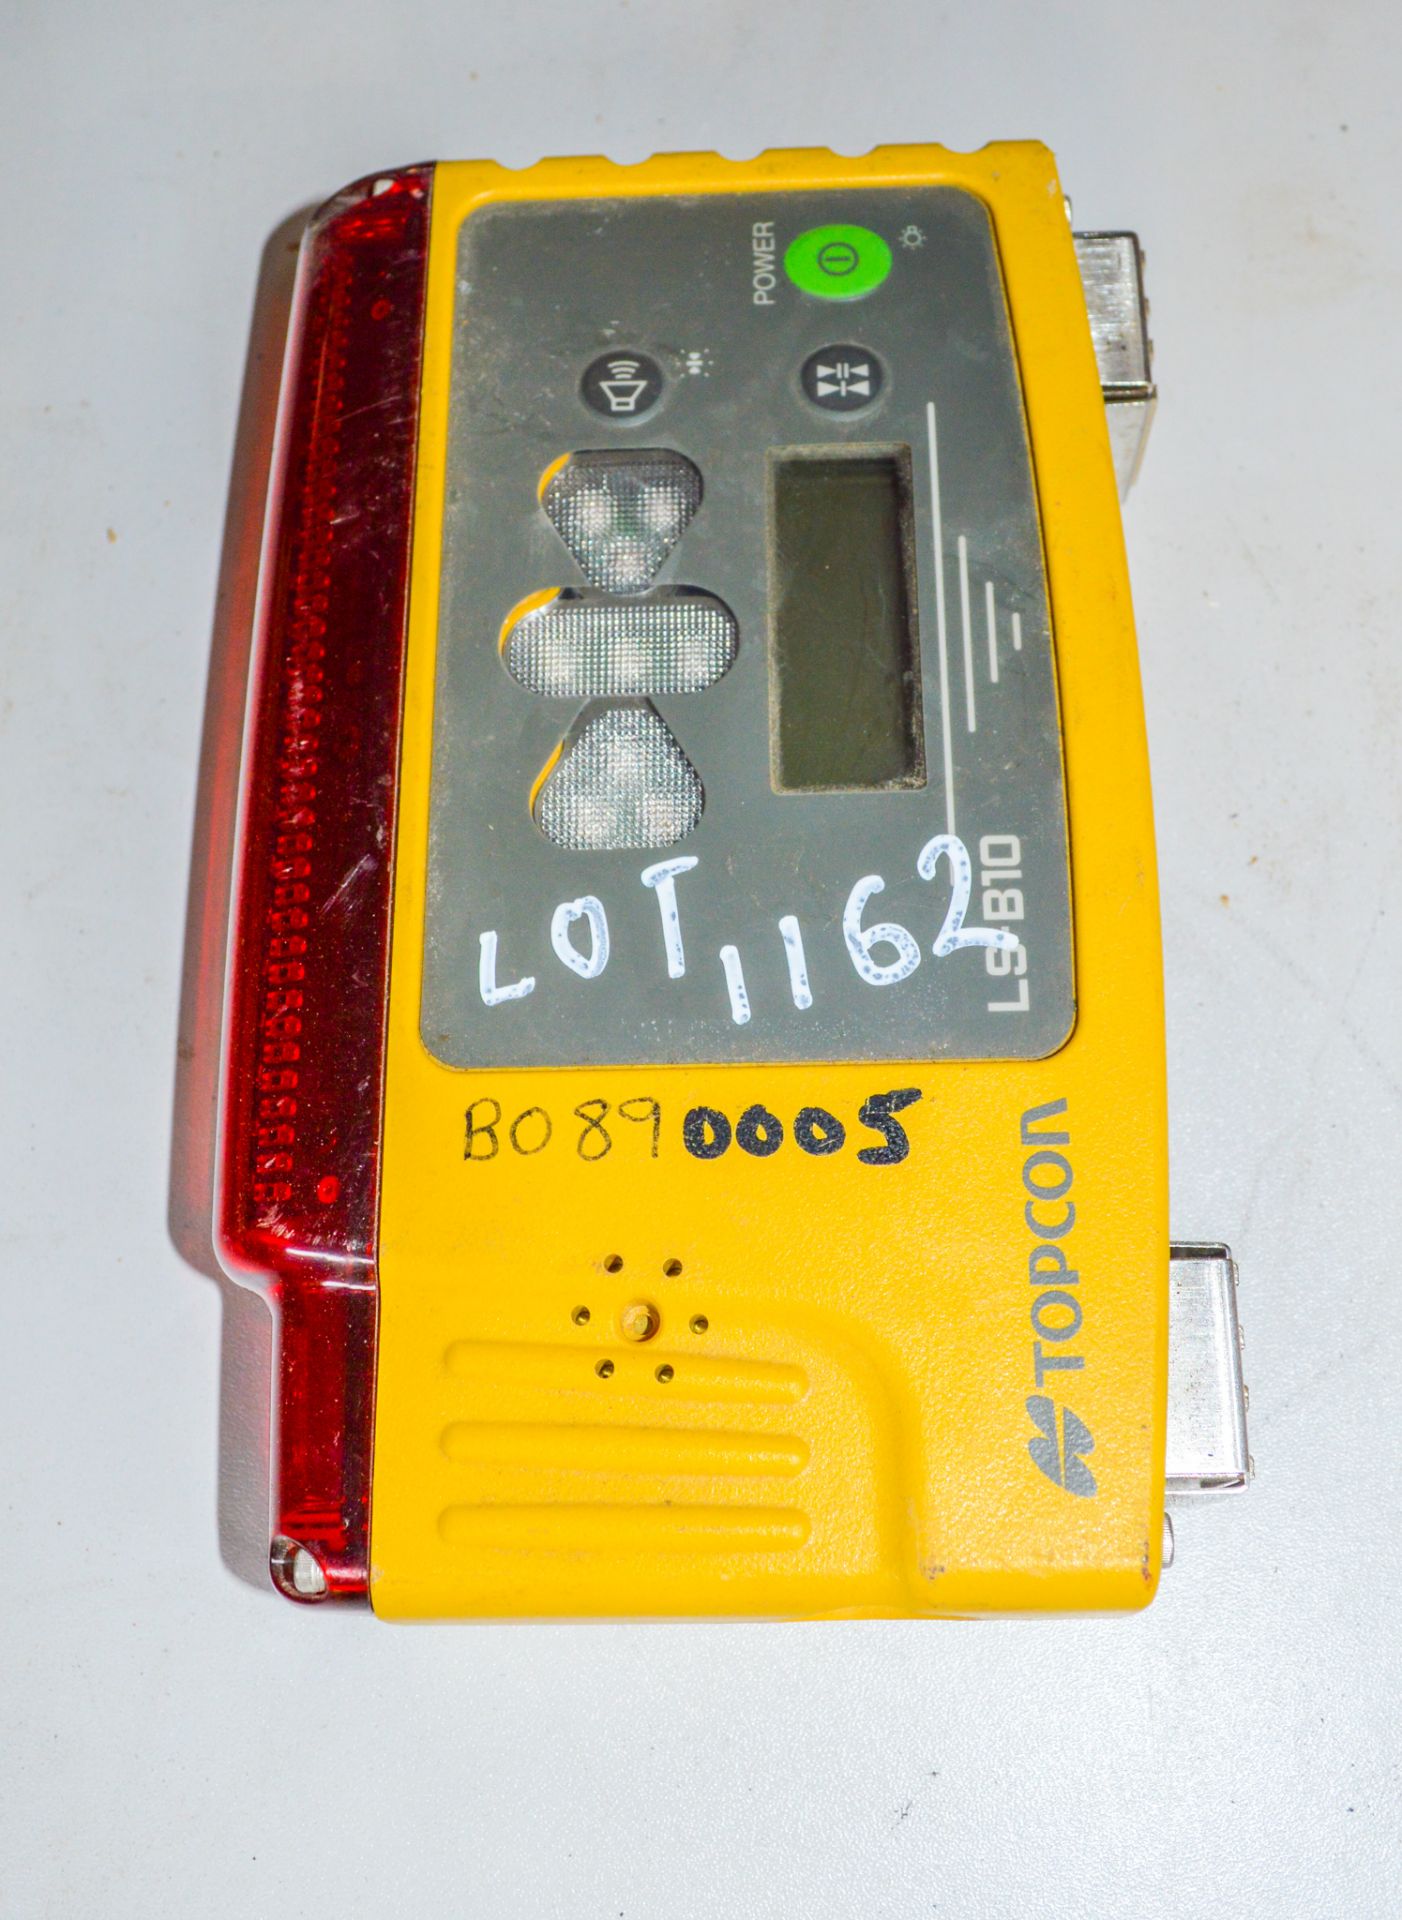 Topcon LS-B10 laser receiver B0890005